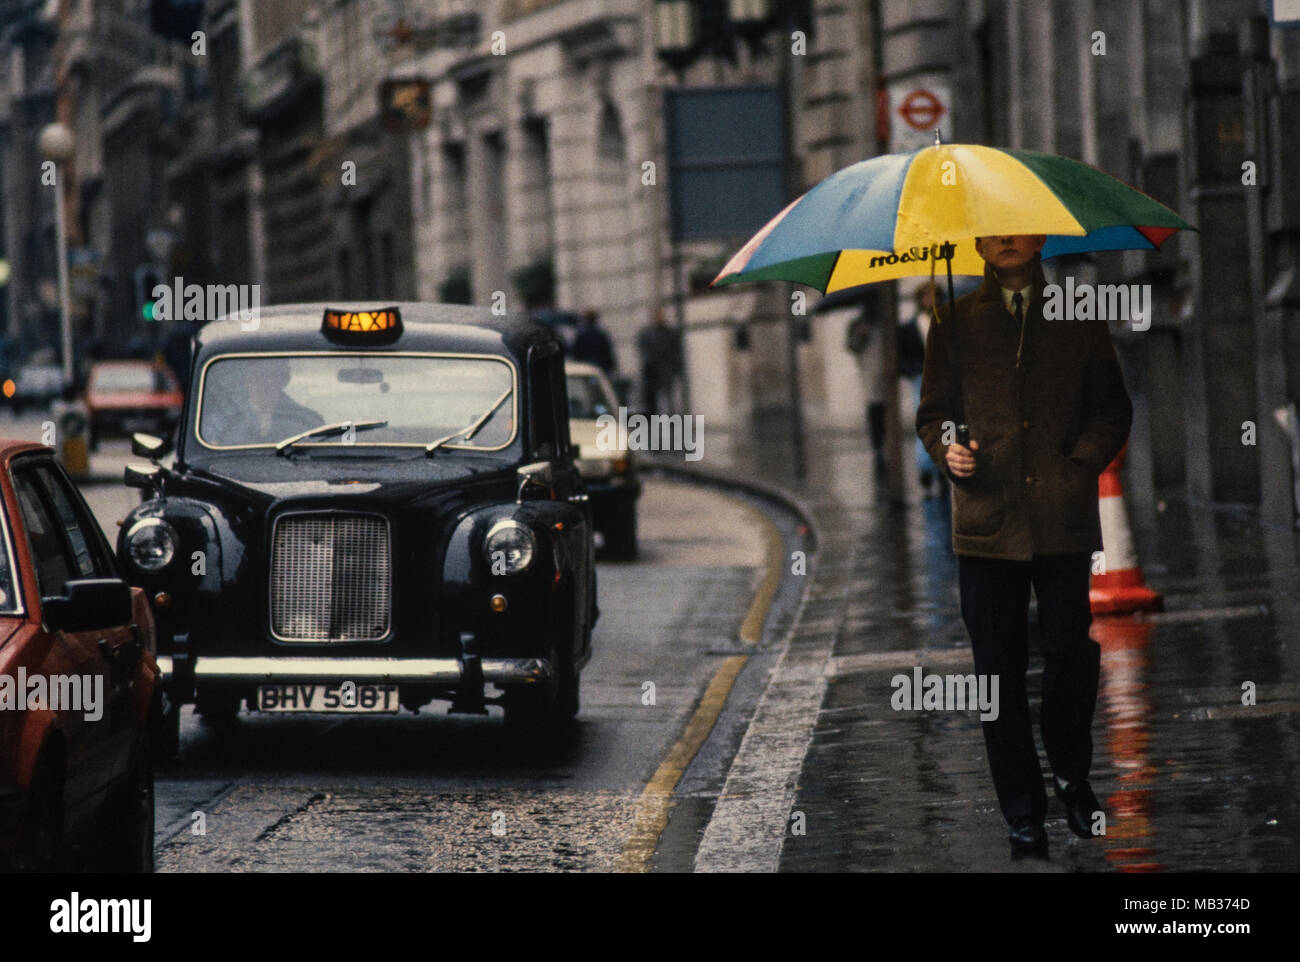 Stadt London England UK Heavy Rain und Taxi mit amn und Regenschirm 1985  Stockfotografie - Alamy